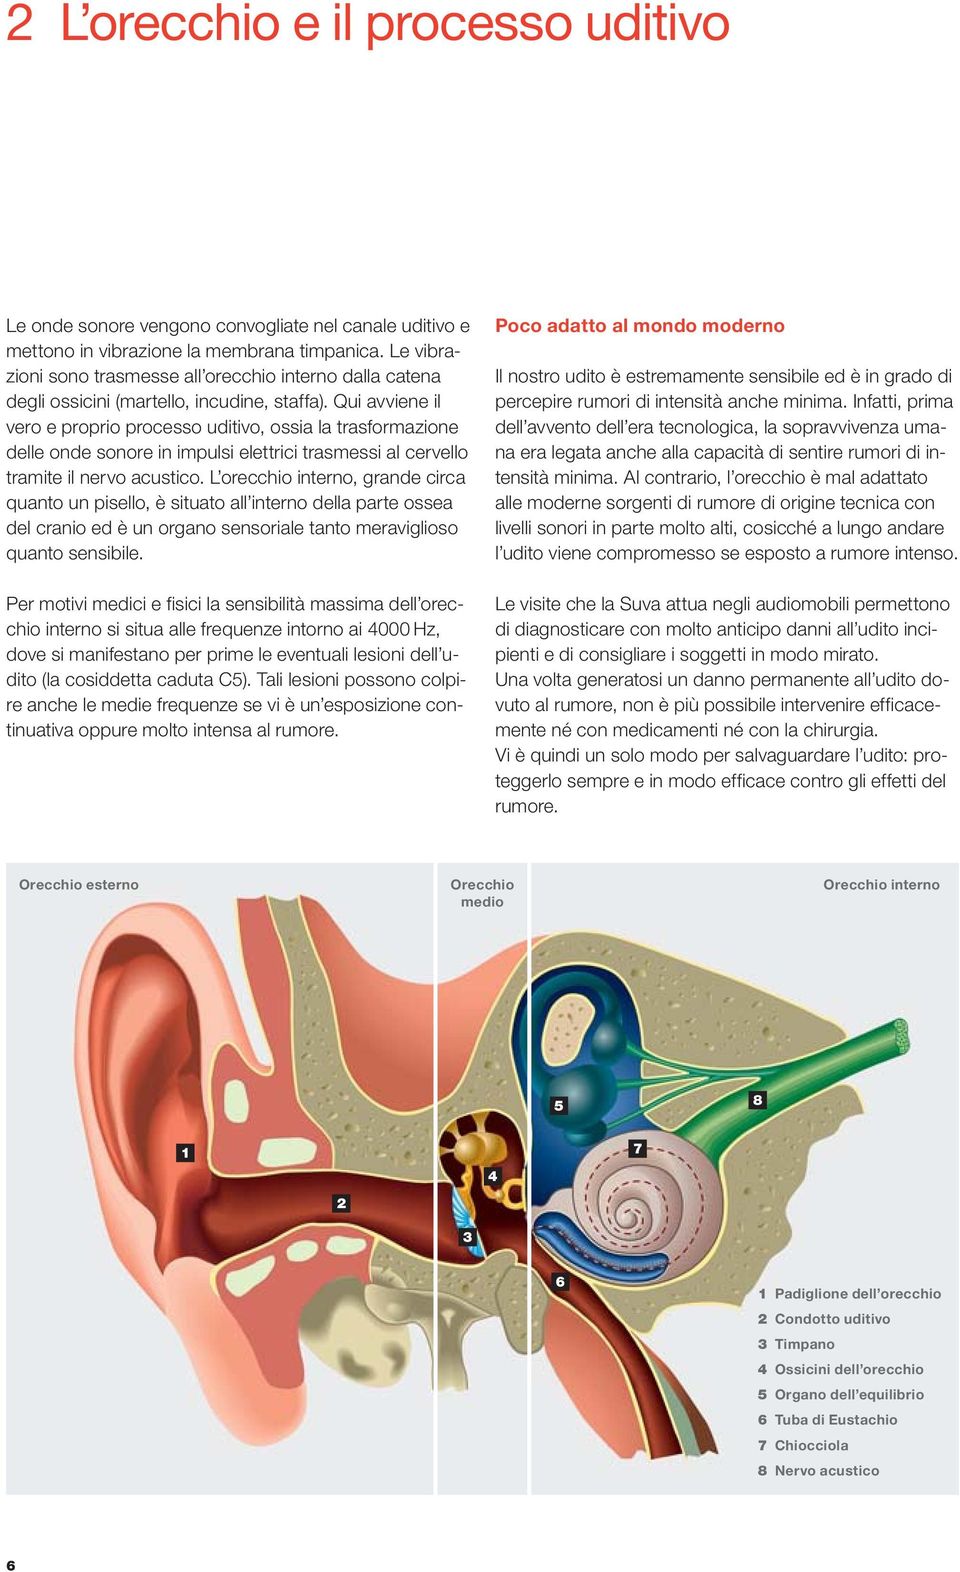 Qui avviene il vero e proprio processo uditivo, ossia la trasformazione delle onde sonore in impulsi elettrici trasmessi al cervello tramite il nervo acustico.